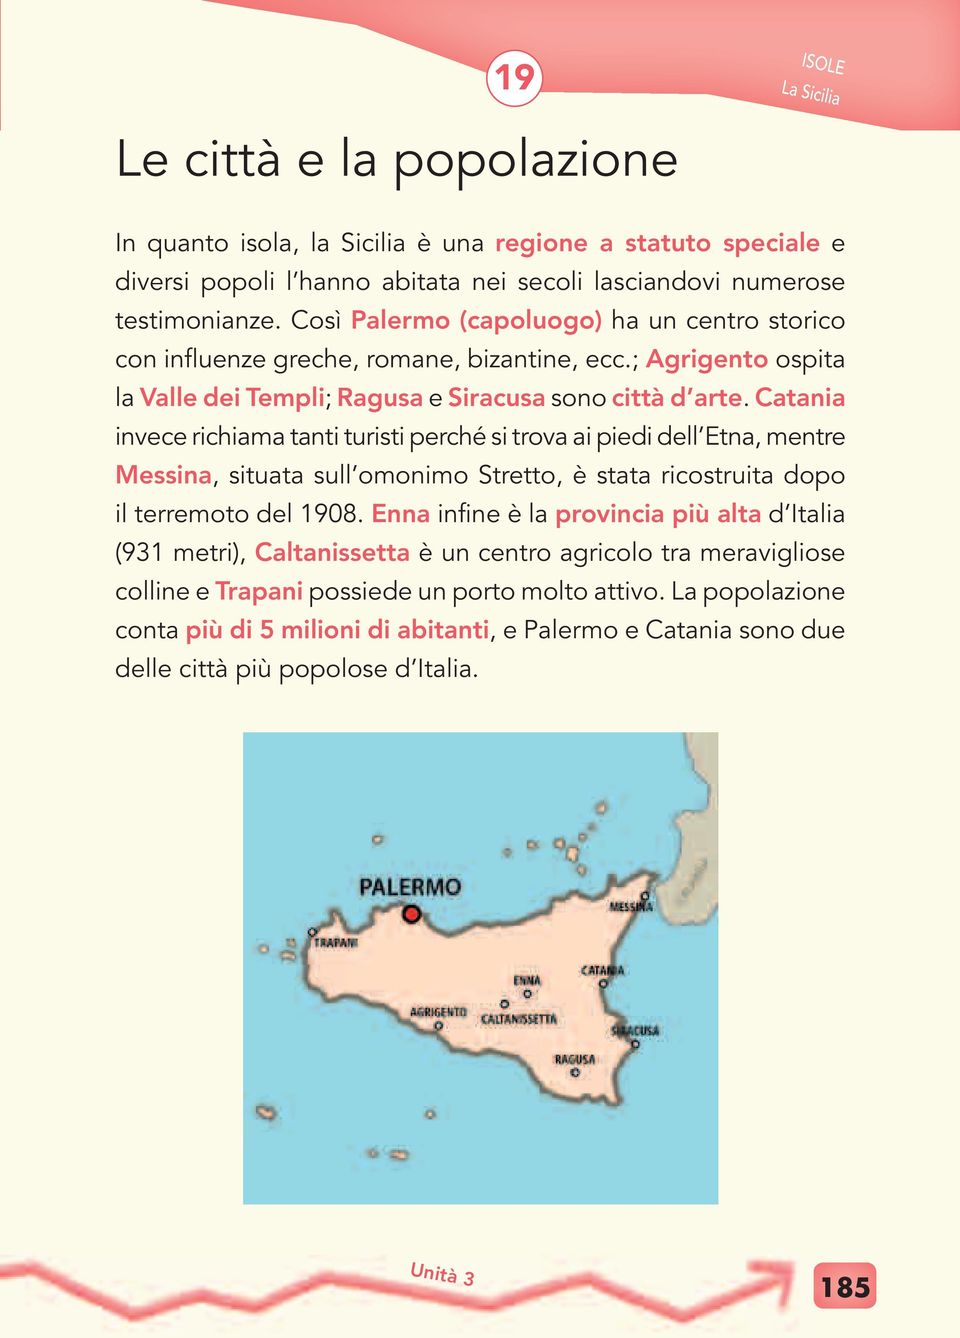 Catania invece richiama tanti turisti perché si trova ai piedi dell Etna, mentre Messina, situata sull omonimo Stretto, è stata ricostruita dopo il terremoto del 1908.